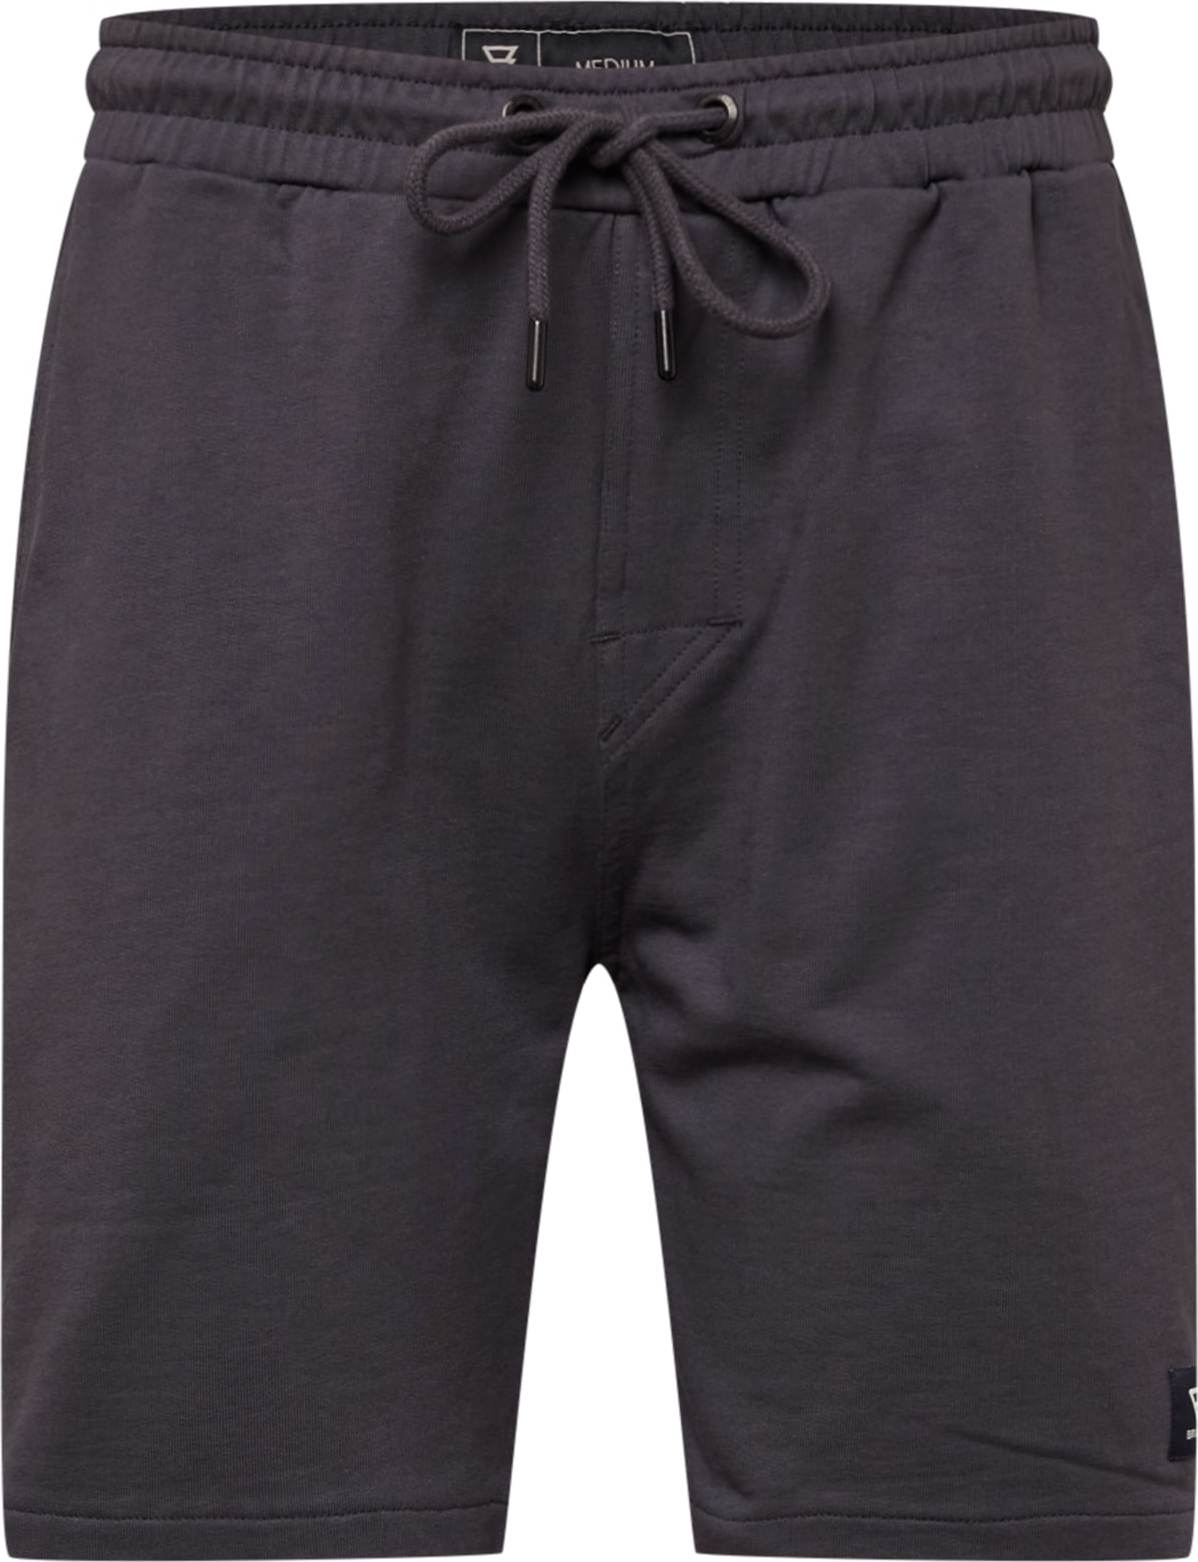 BRUNOTTI Outdoorové kalhoty antracitová / bílá / černá